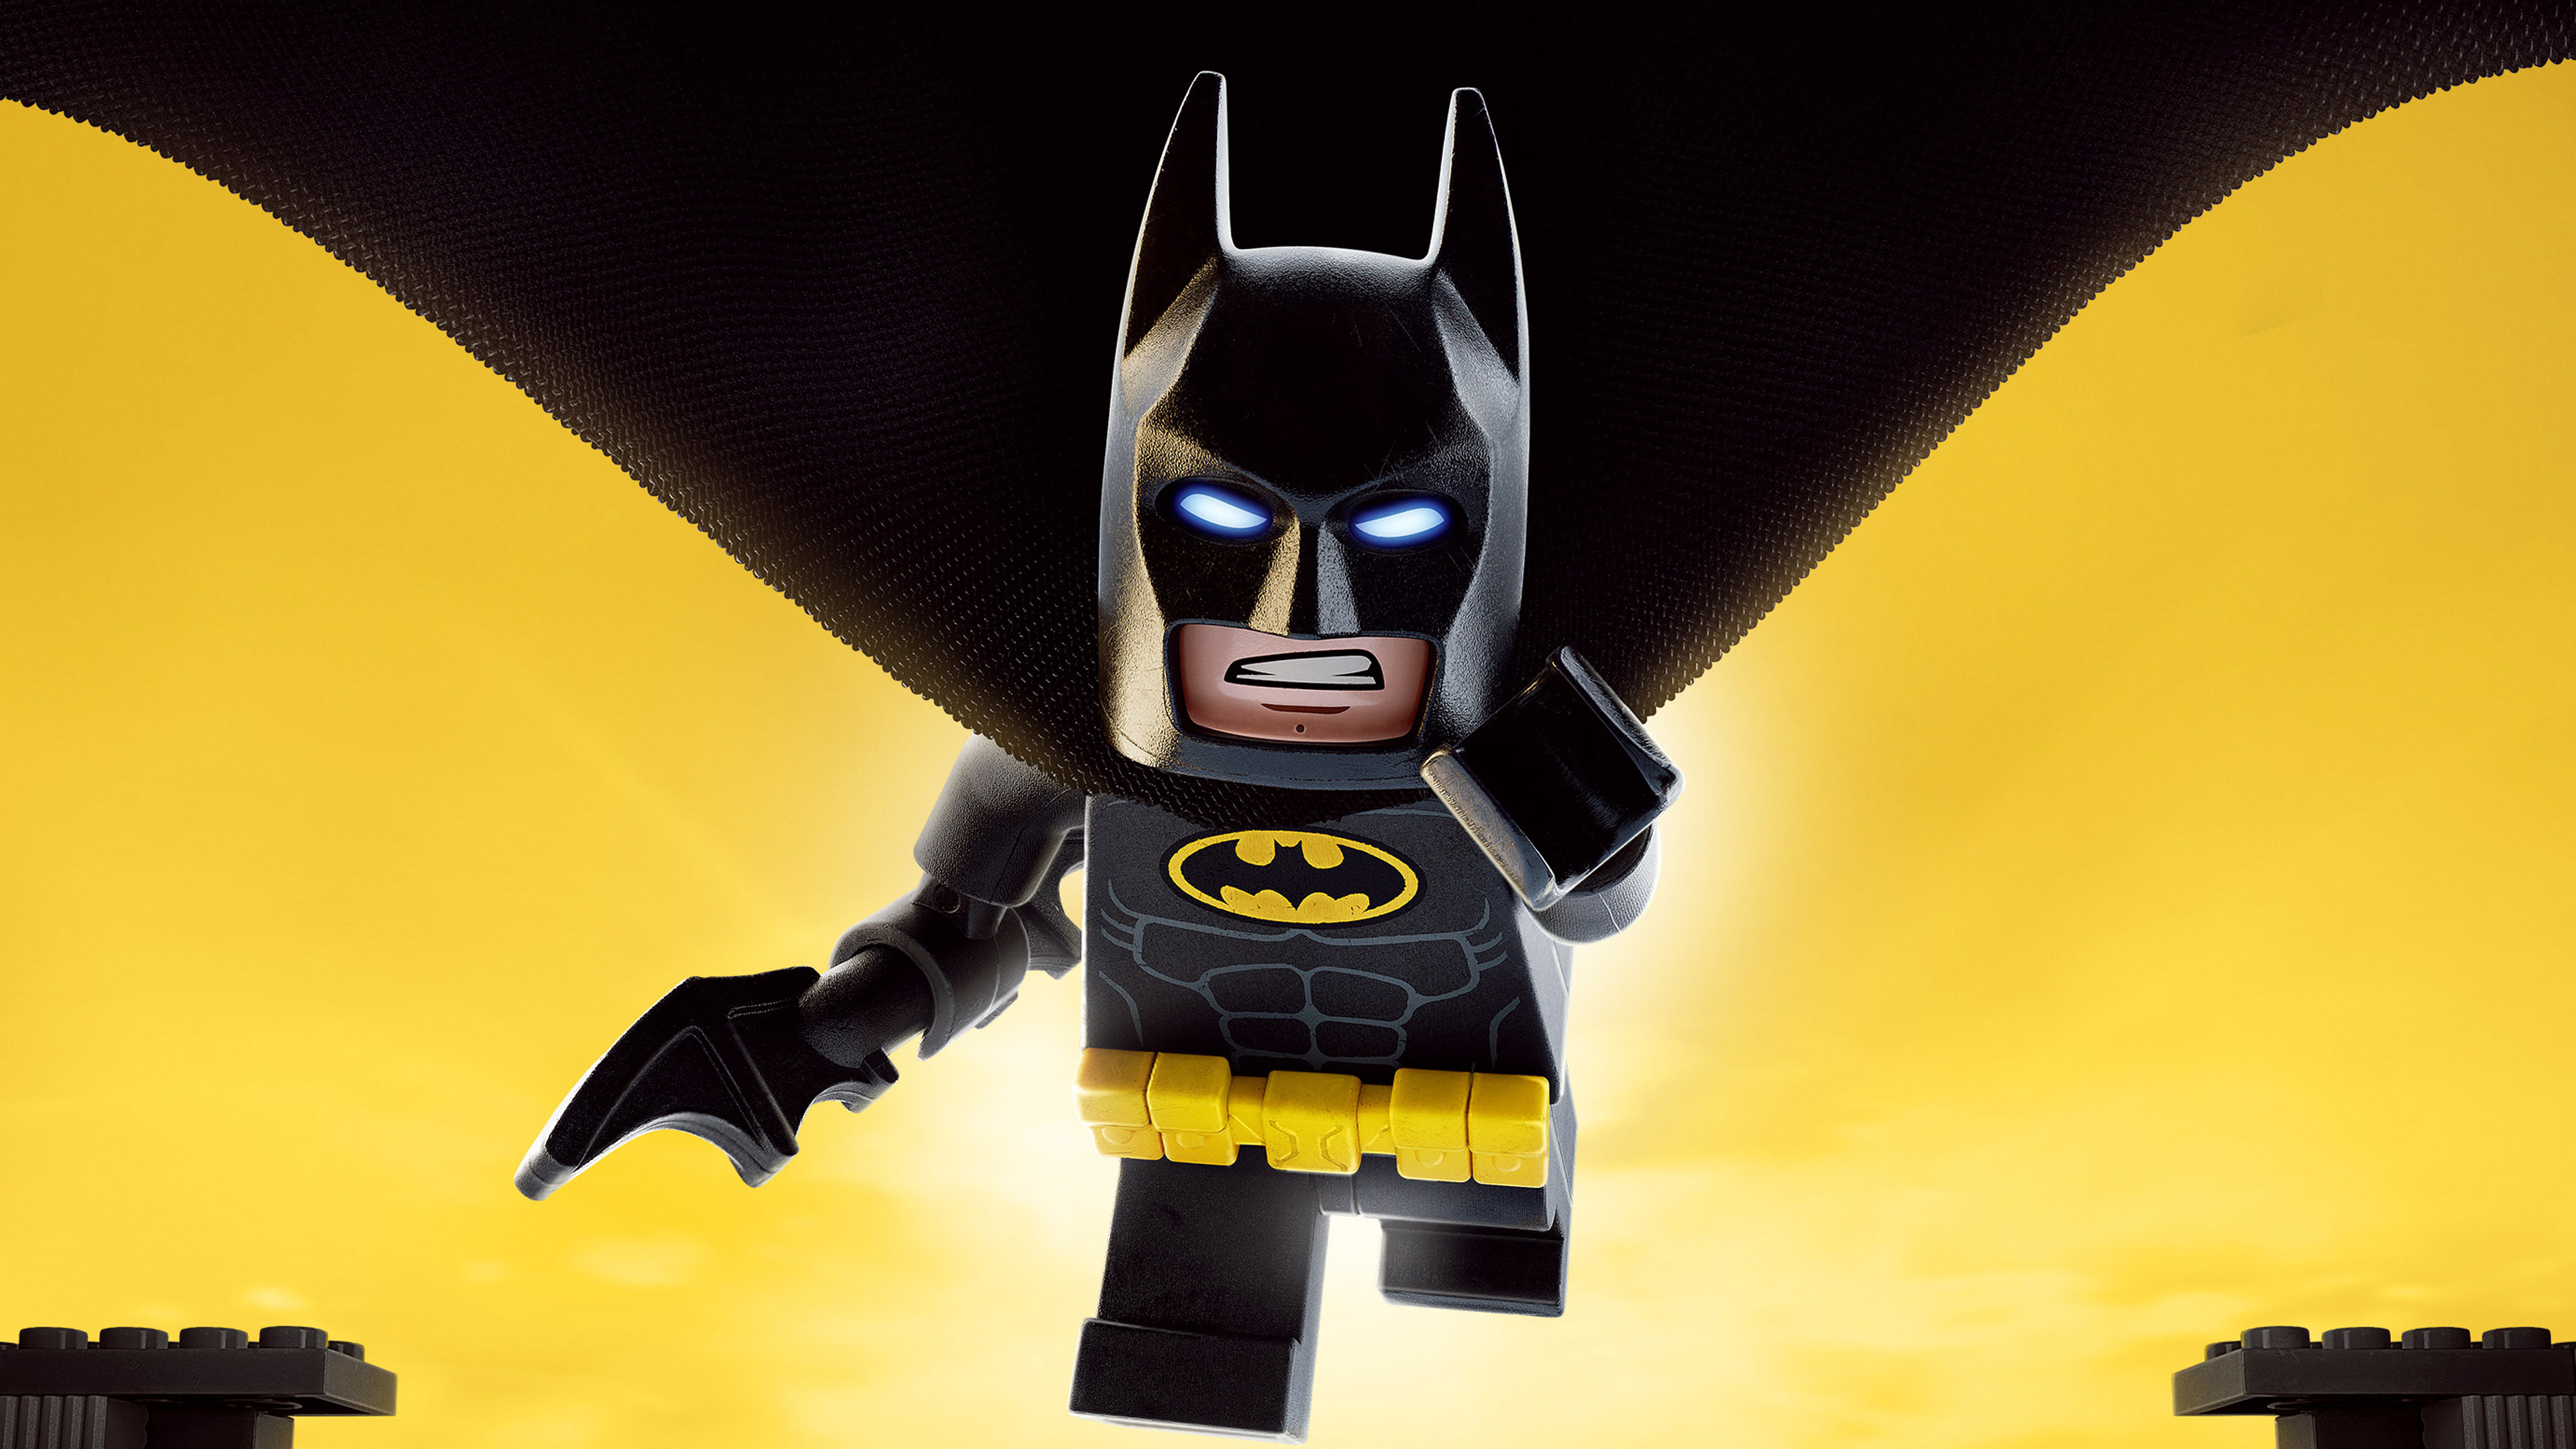 Lego Batman 2022 Wallpapers - Wallpaper Cave